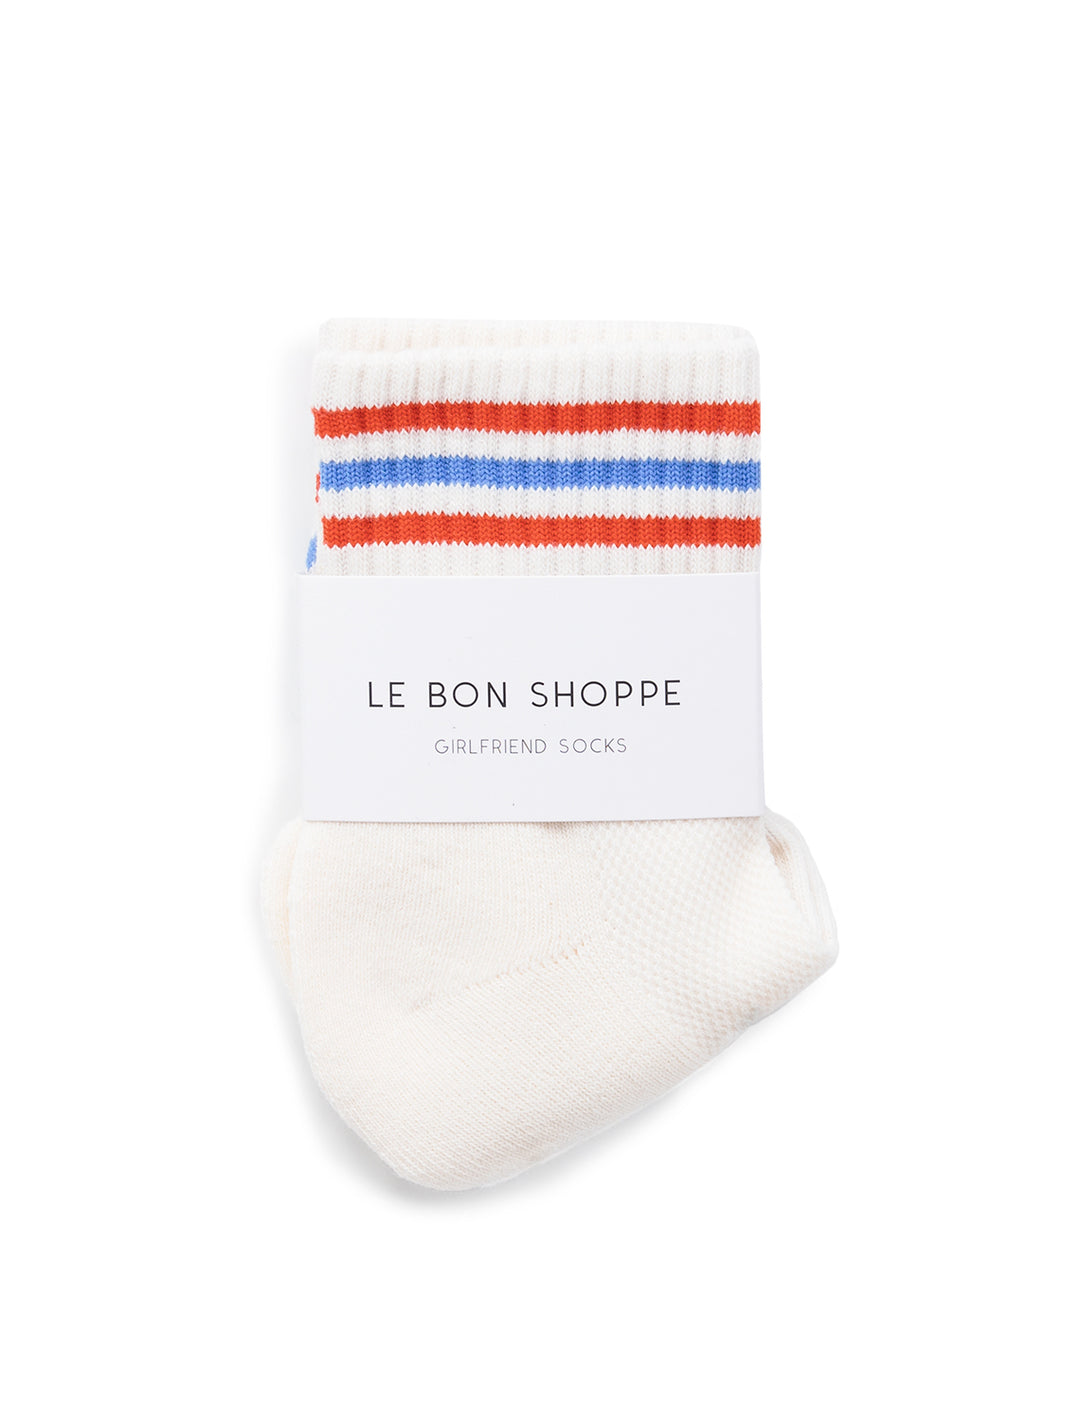 Front view of Le Bon Shoppe's girlfriend socks in leche.